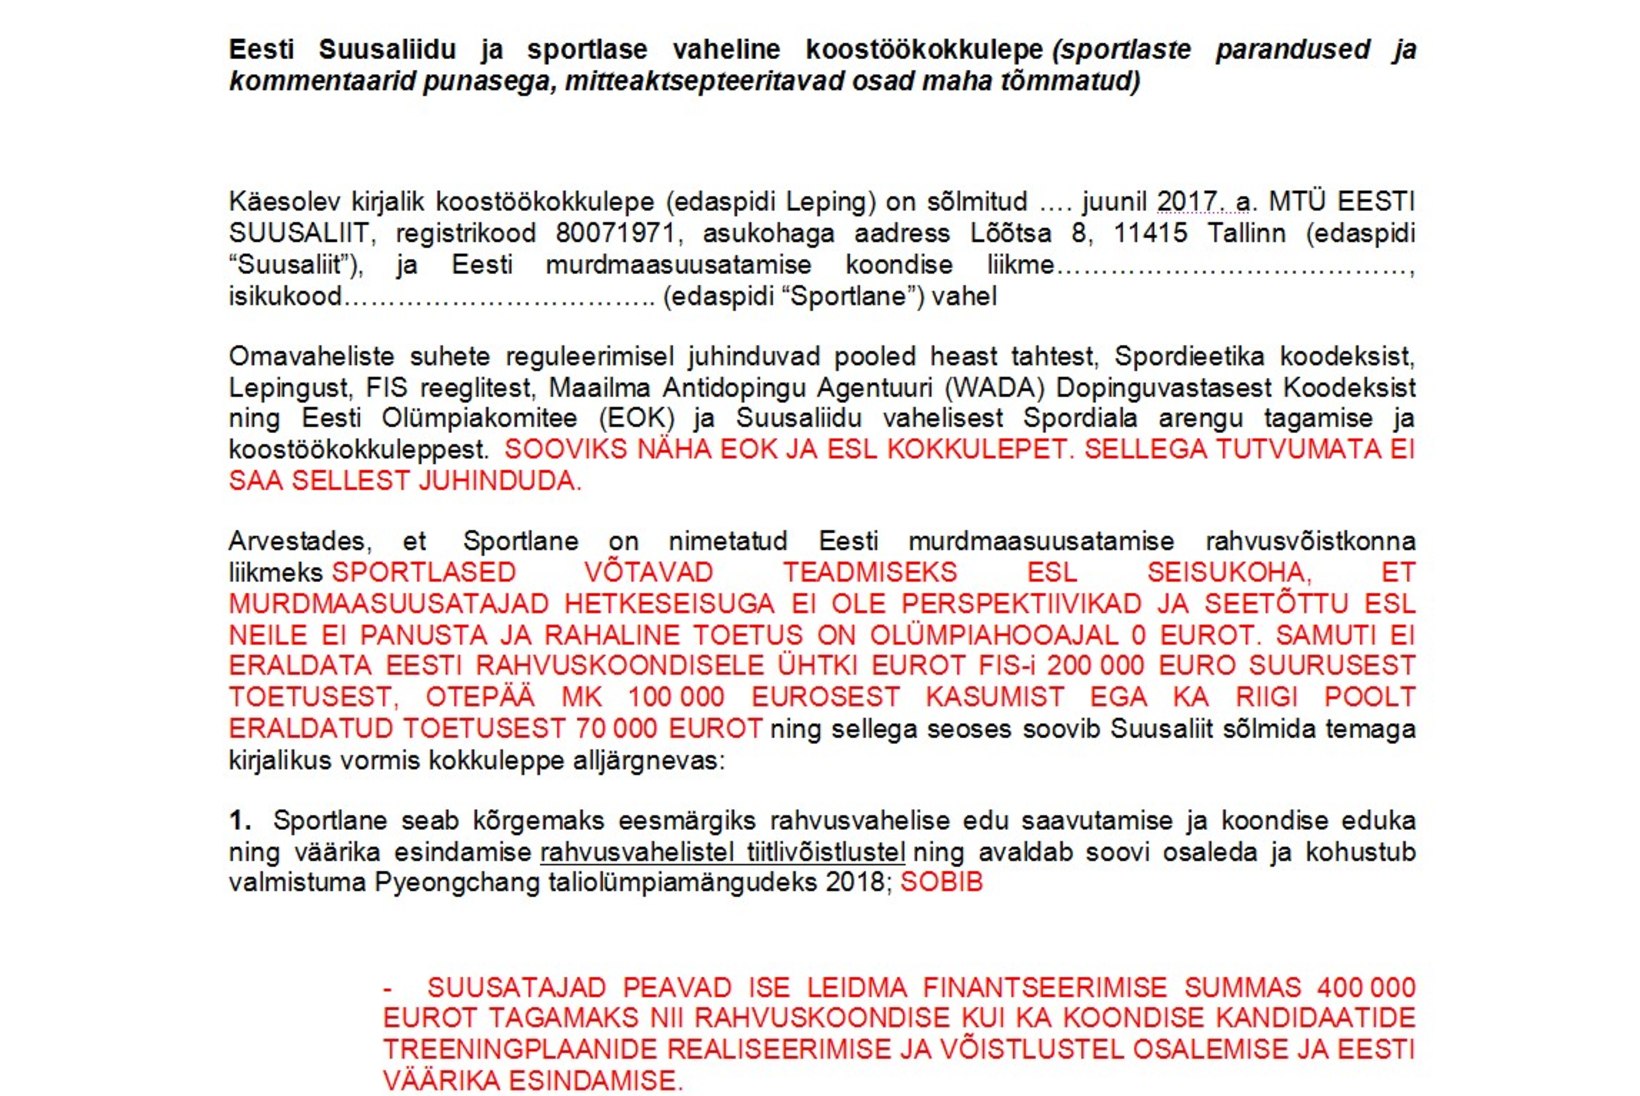 Anti Saarepuu vastulause Postimehe artiklile: kinnitan, et mina ei ole valetanud